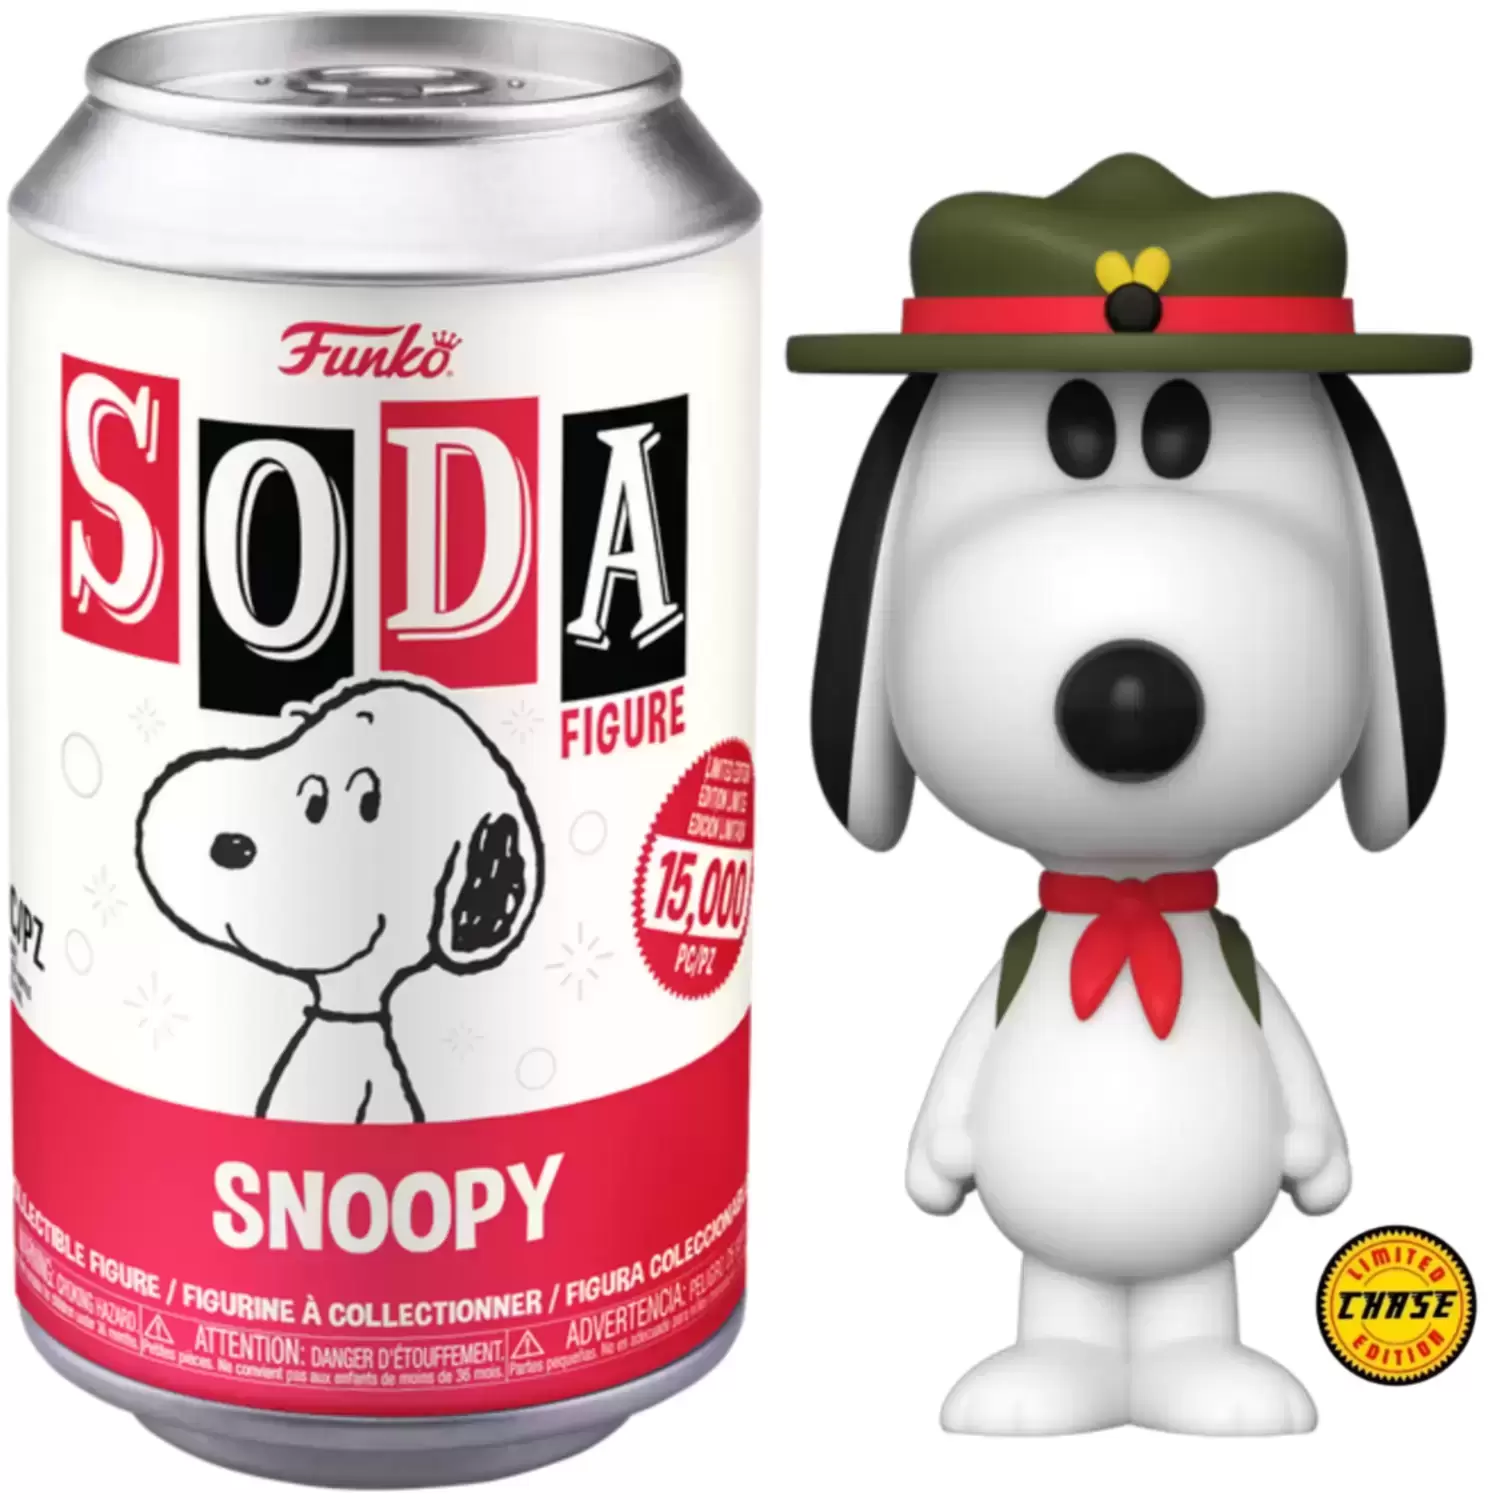 Vinyl Soda! - Peanuts - Snoopy Chase